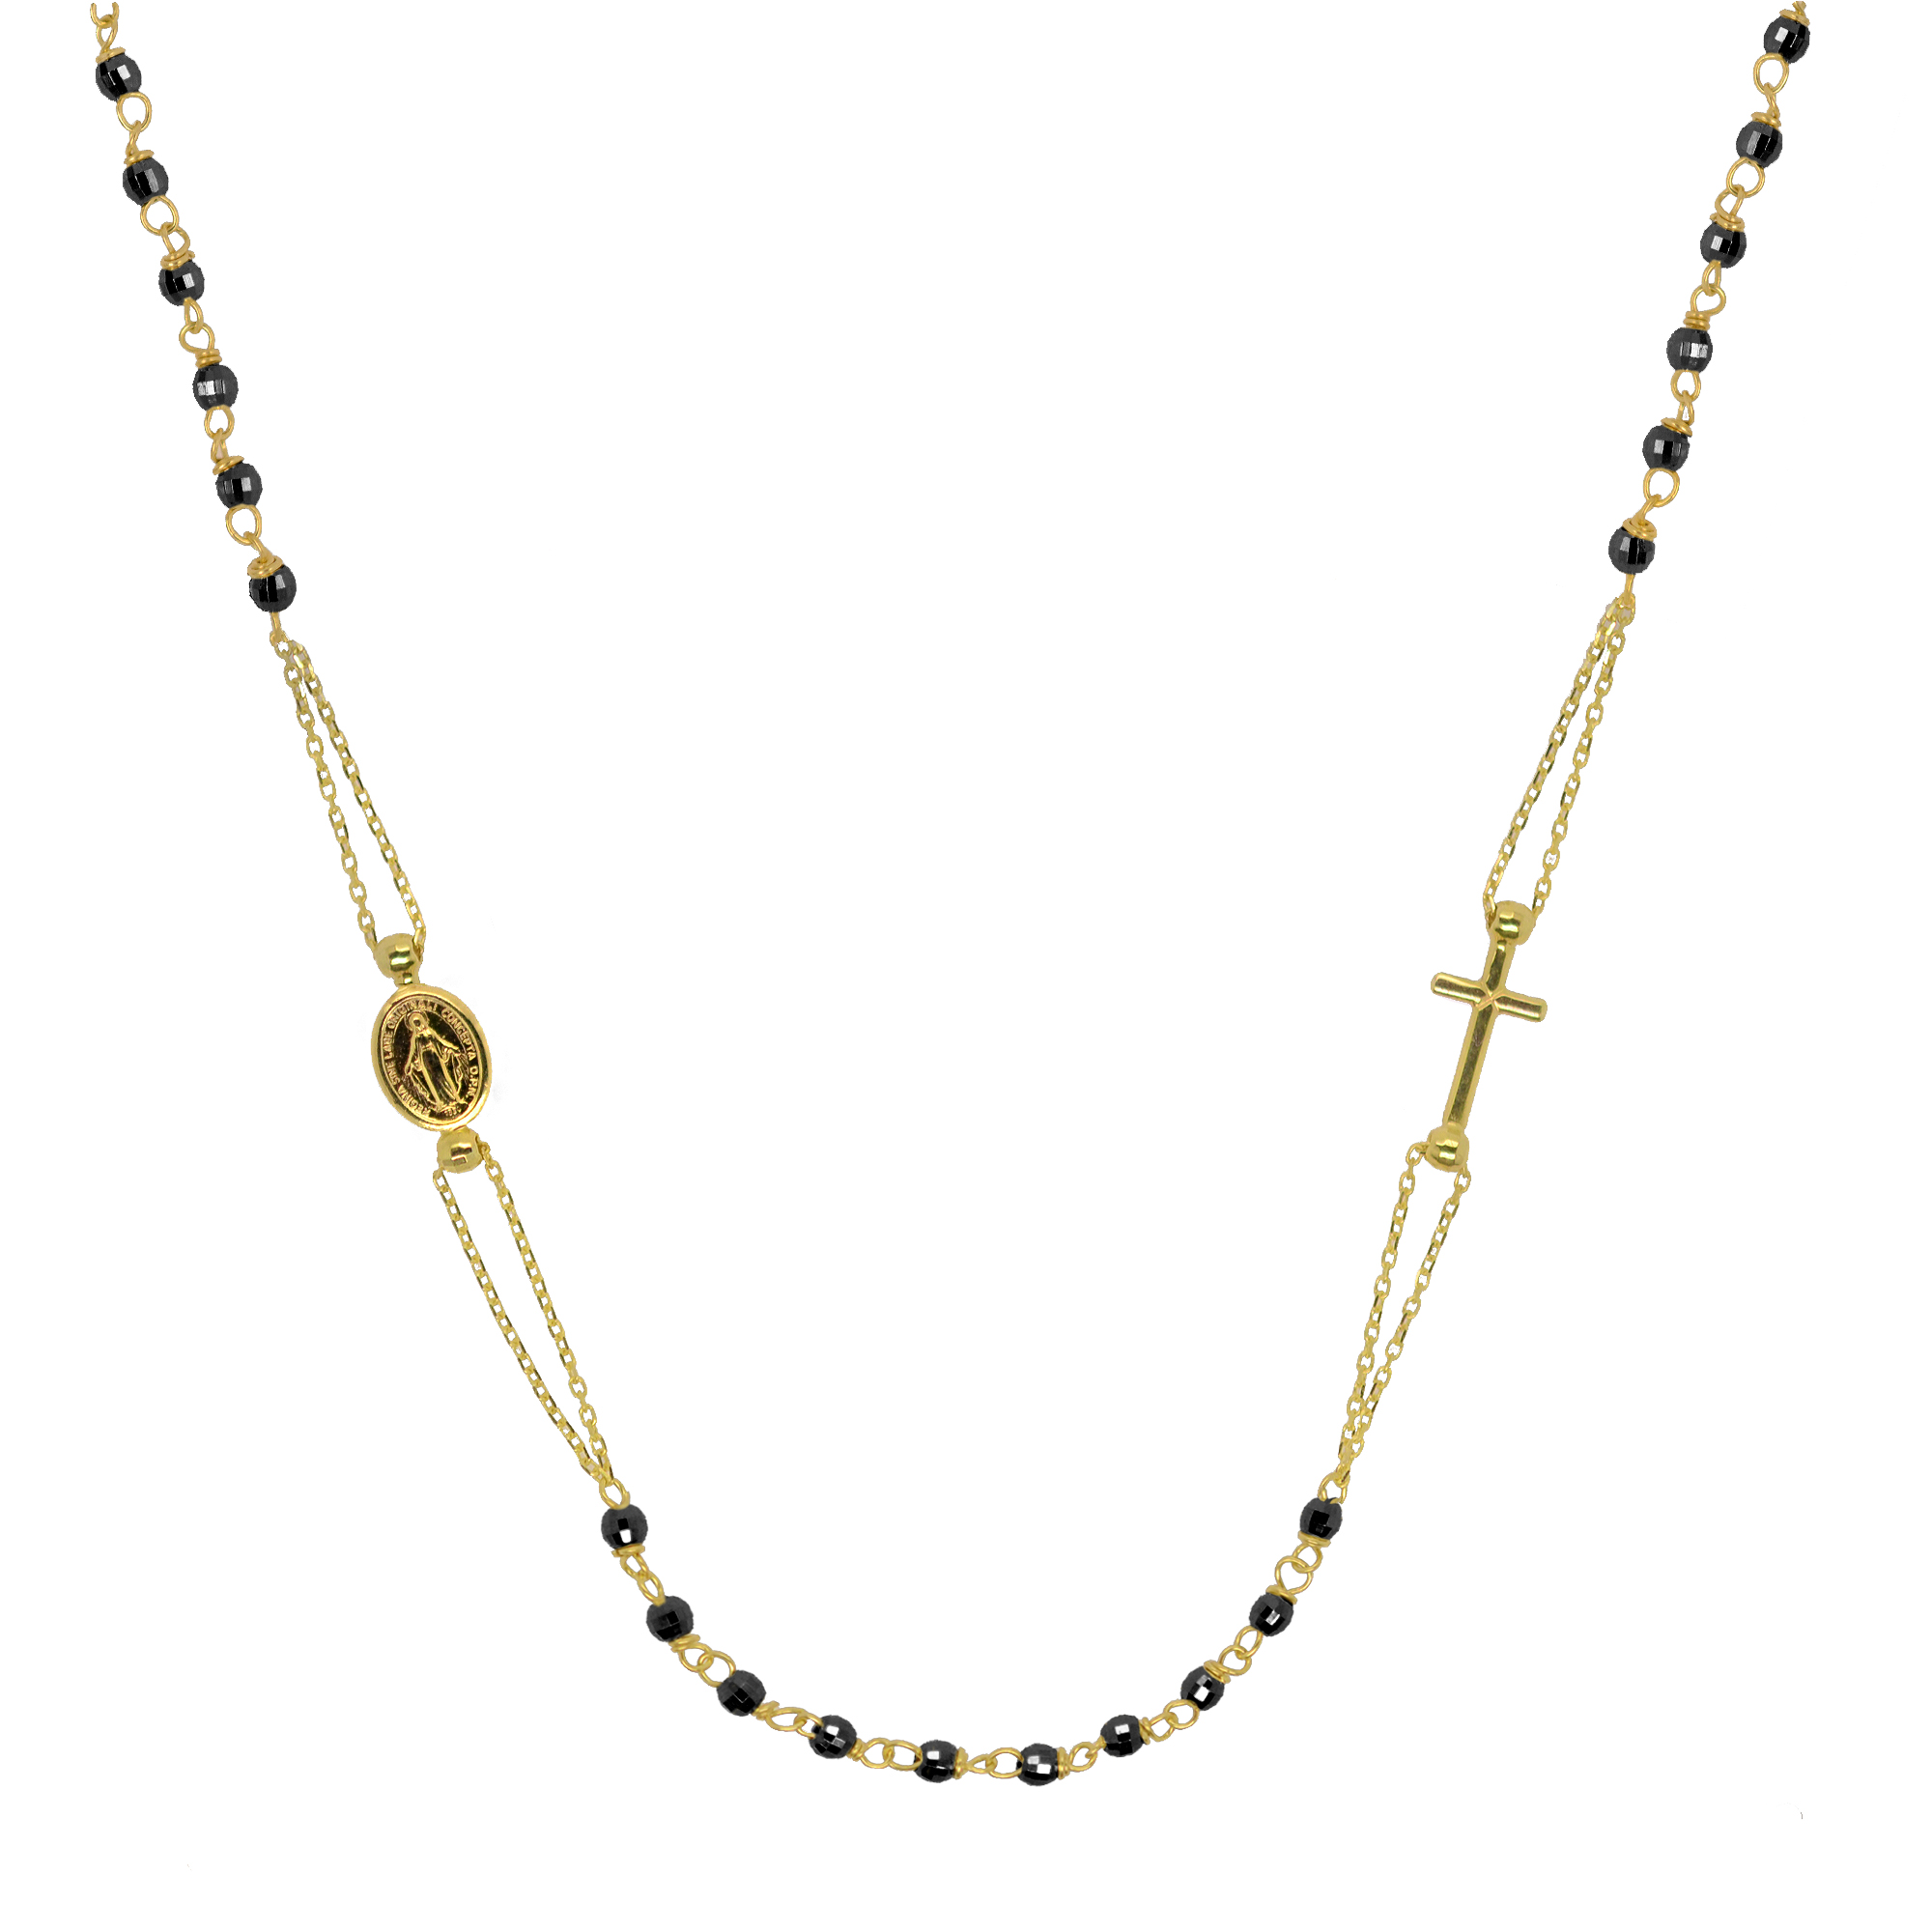 Evolution Group Zlatý 14 karátový náhrdelník růženec s křížem a medailonkem s Pannou Marií RŽ01 černý